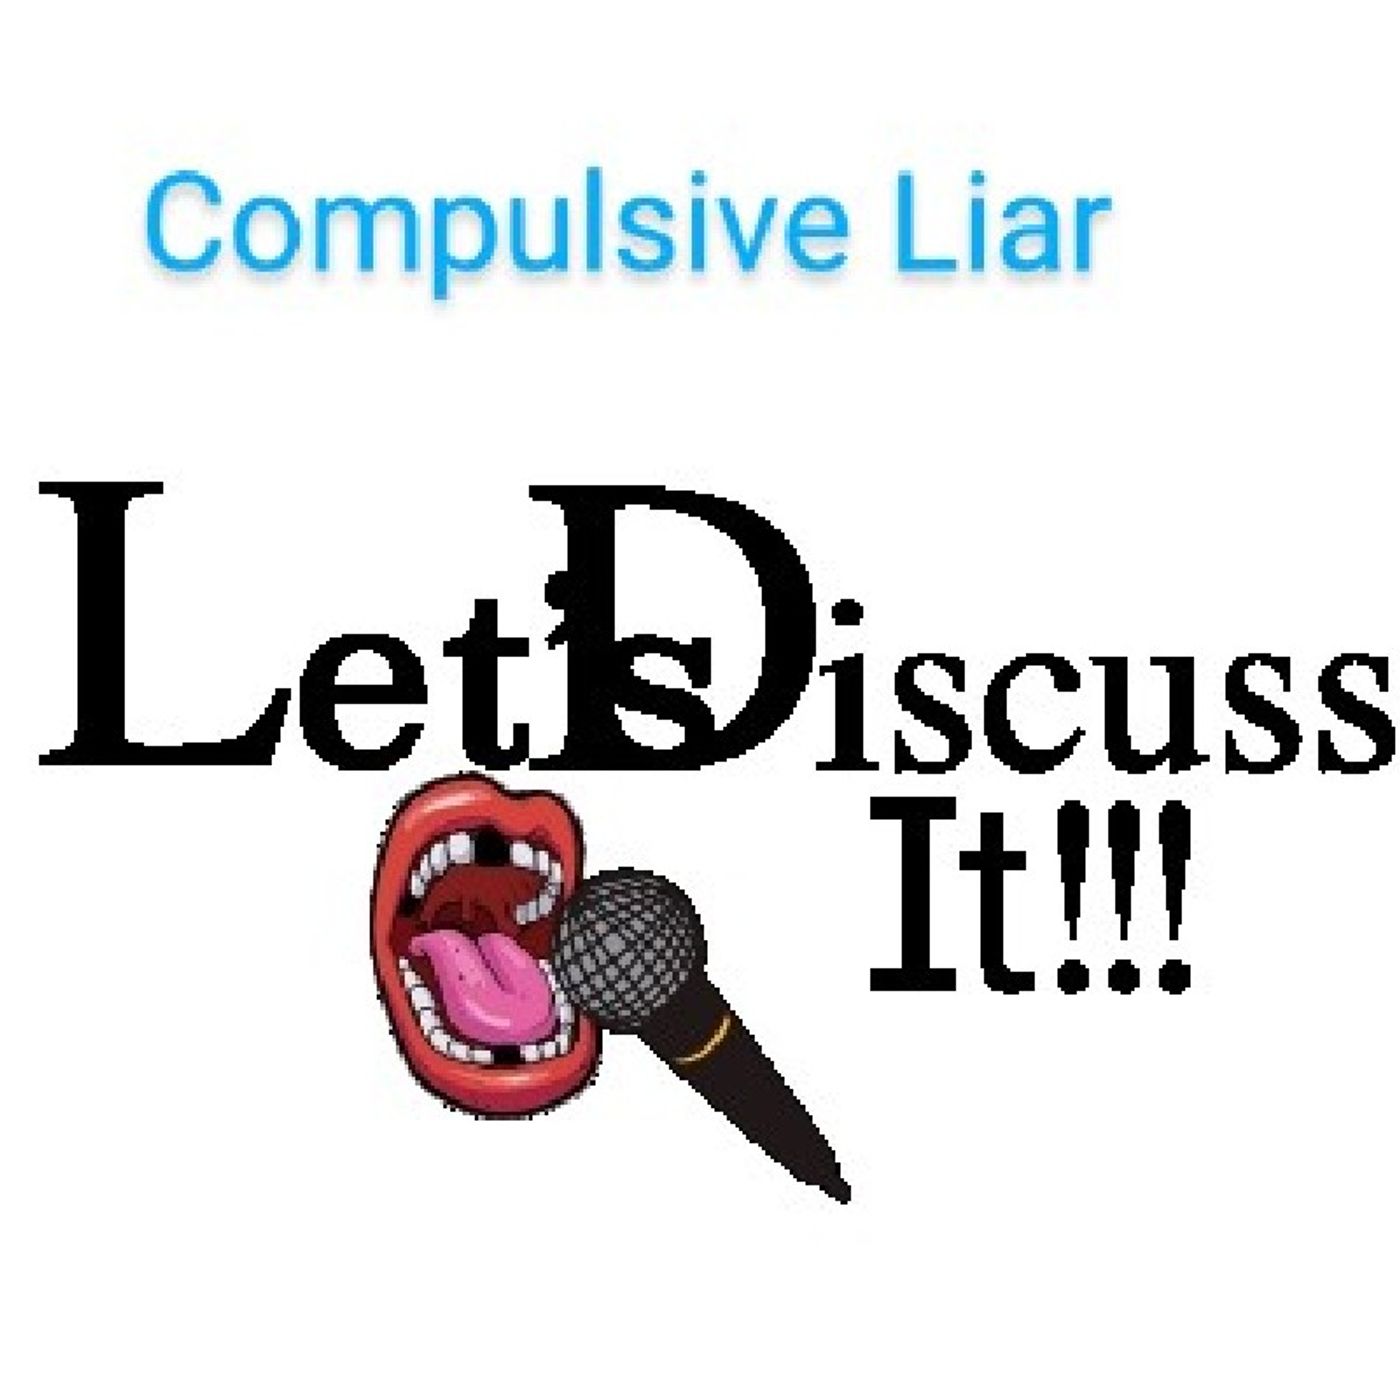 Compulsive Liar: Let's discuss It!!!